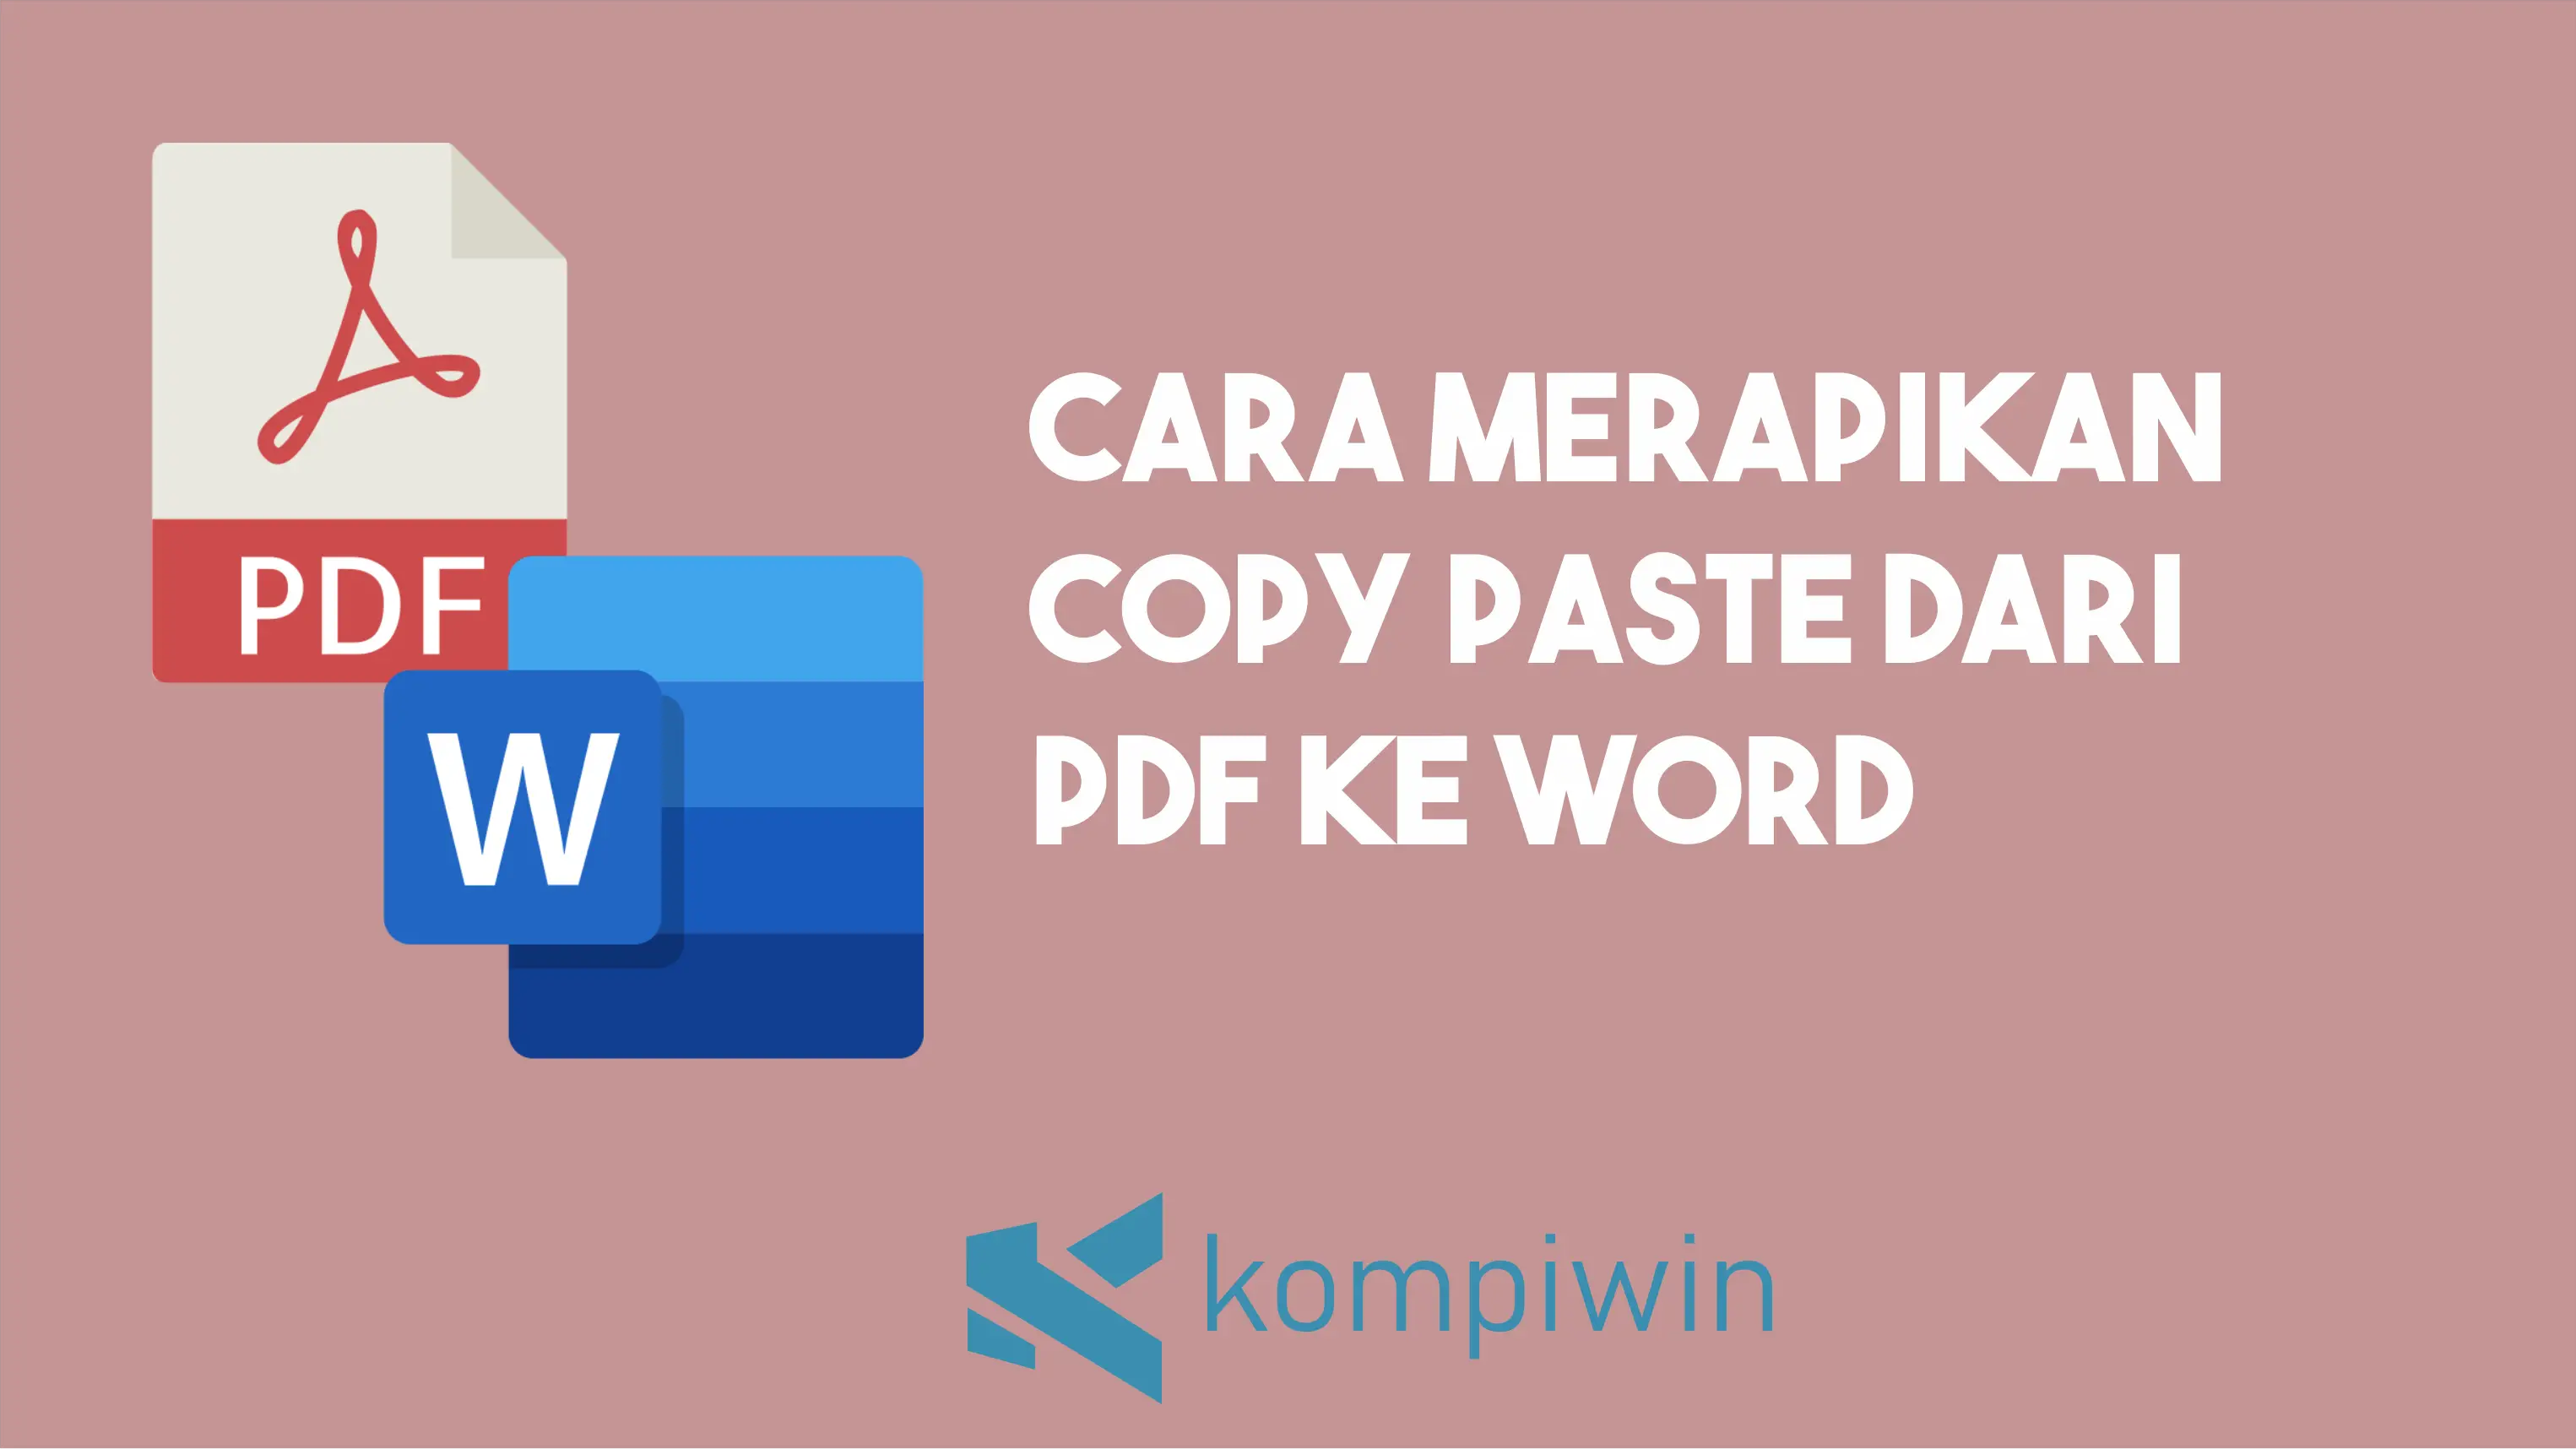 Cara Merapikan Copy Paste Dari PDF Ke Word